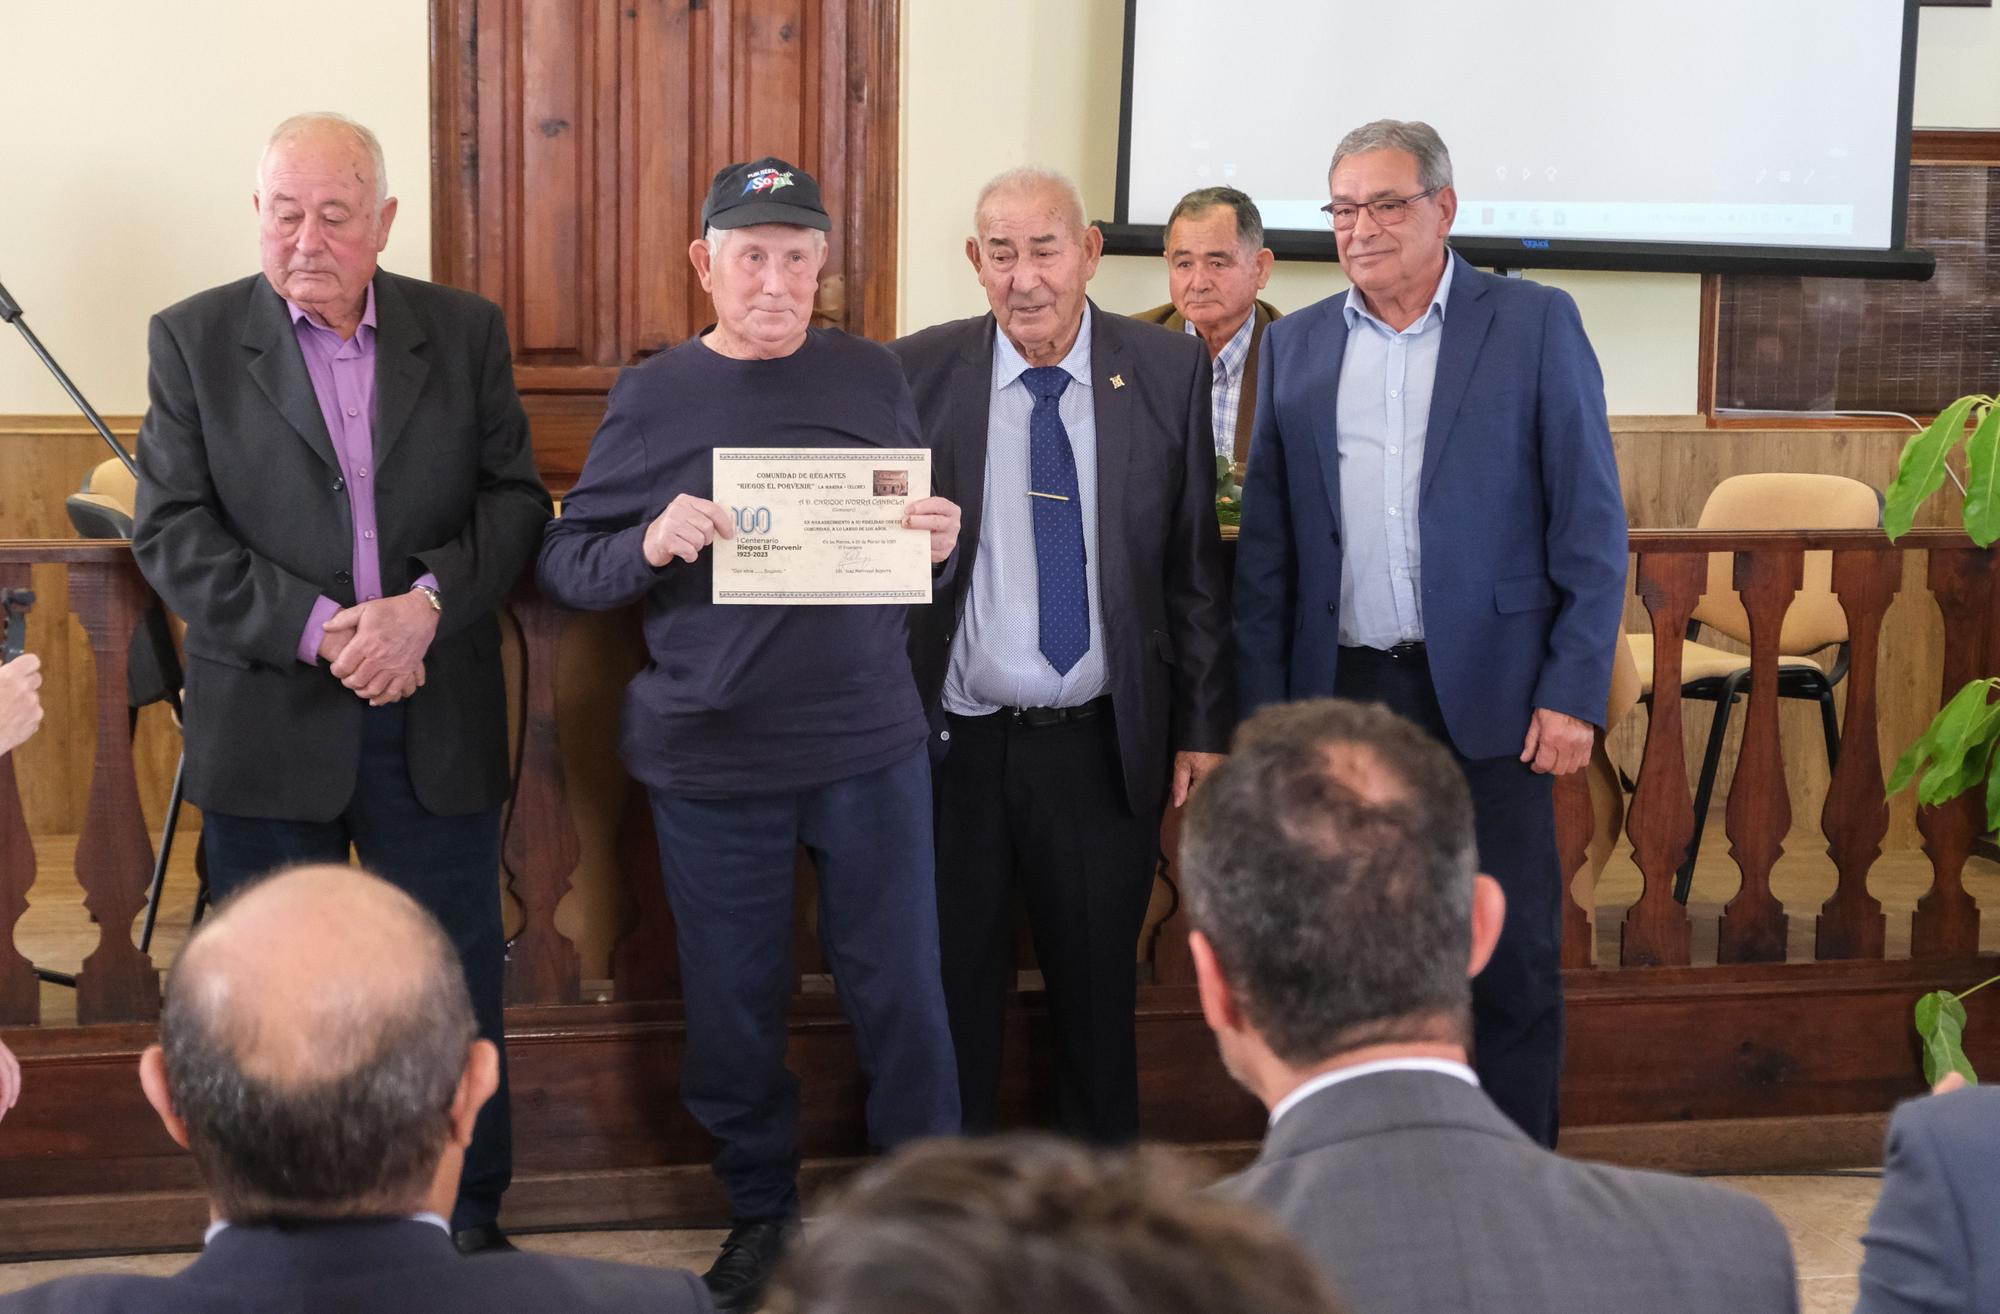 El alcalde de Elche anuncia la concesión de la medalla de plata del Bimil.lenari a Riegos El Porvenir